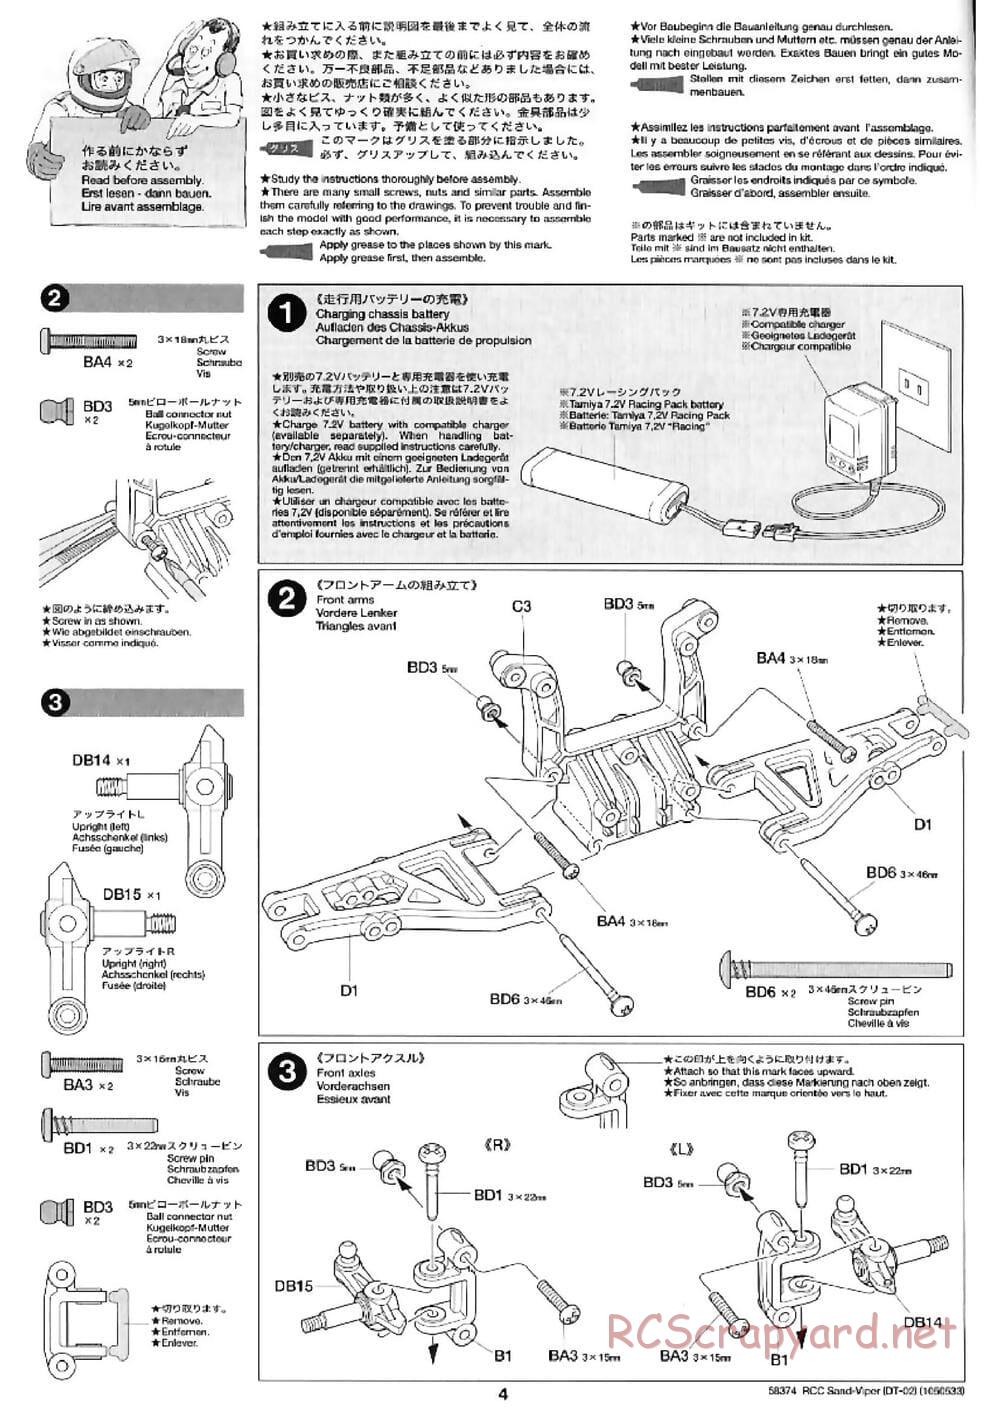 Tamiya - Sand Viper Chassis - Manual - Page 4